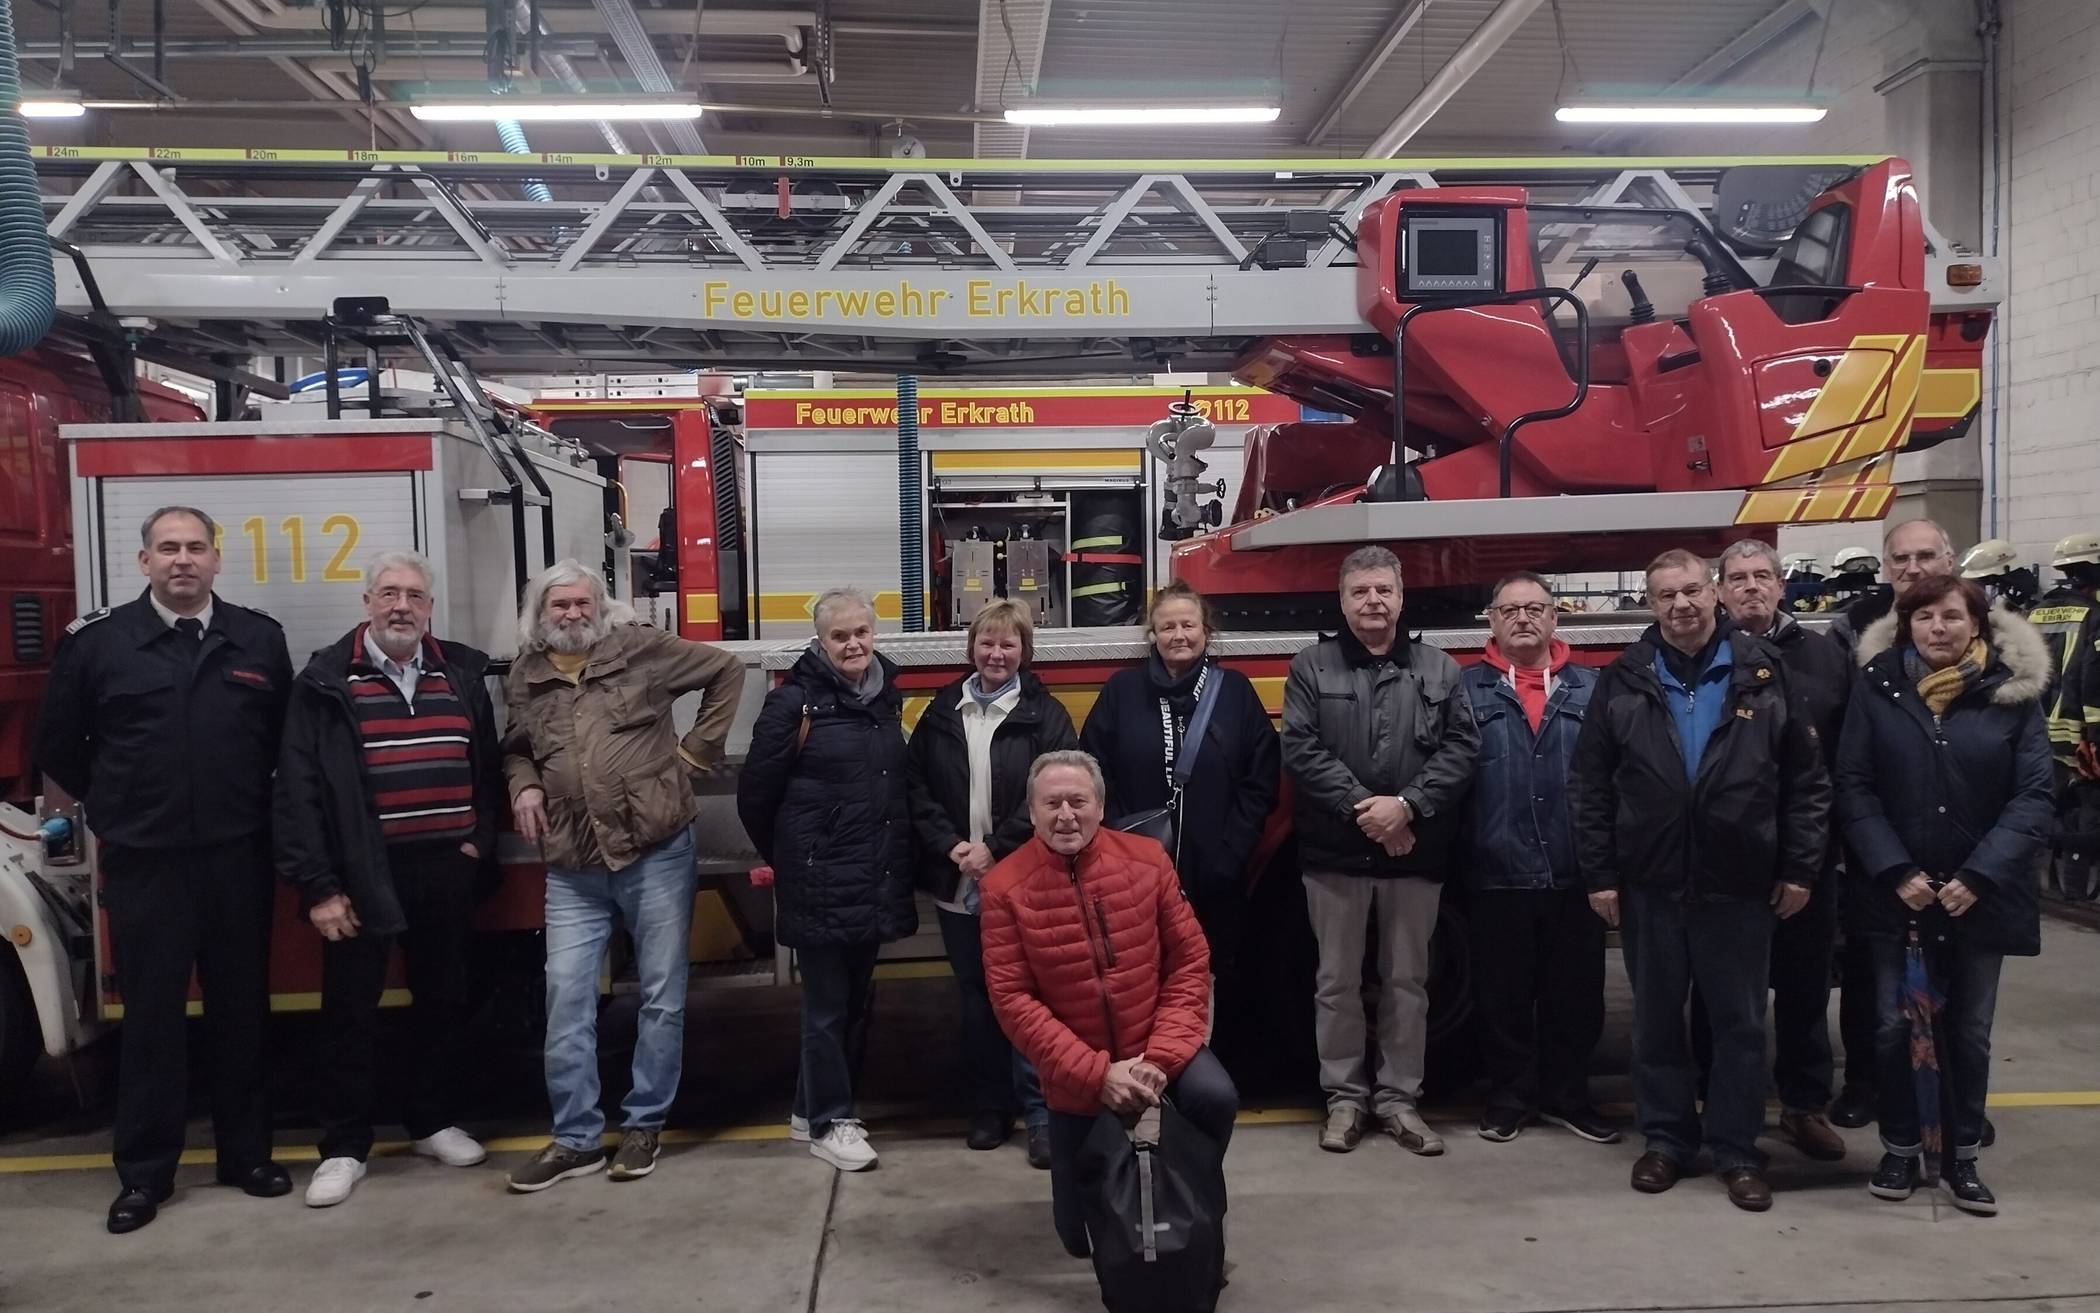  Der Seniorenrat Erkrath besuchte kürzlich Feuerwehrwache in Hochdahl. 